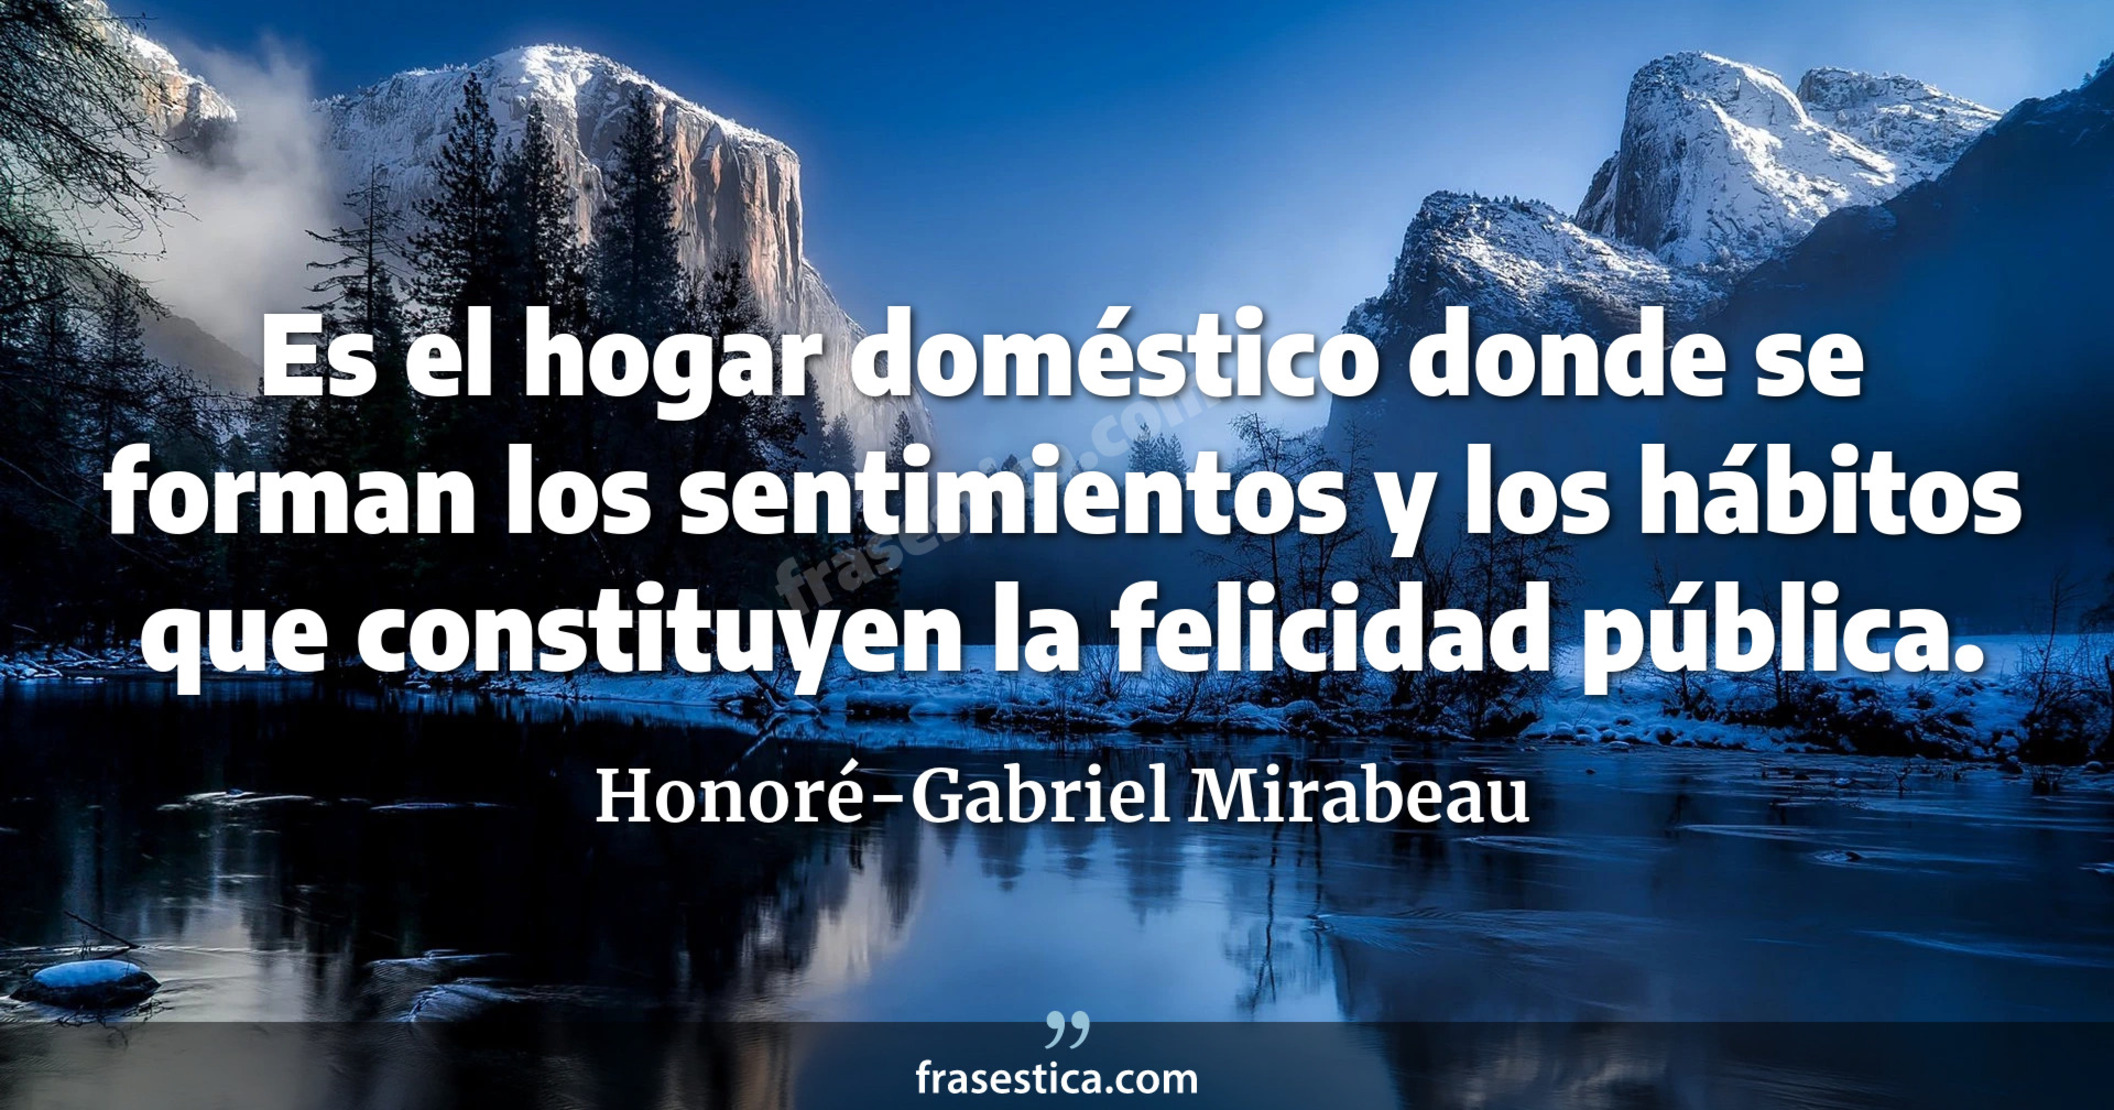 Es el hogar doméstico donde se forman los sentimientos y los hábitos que constituyen la felicidad pública. - Honoré-Gabriel Mirabeau